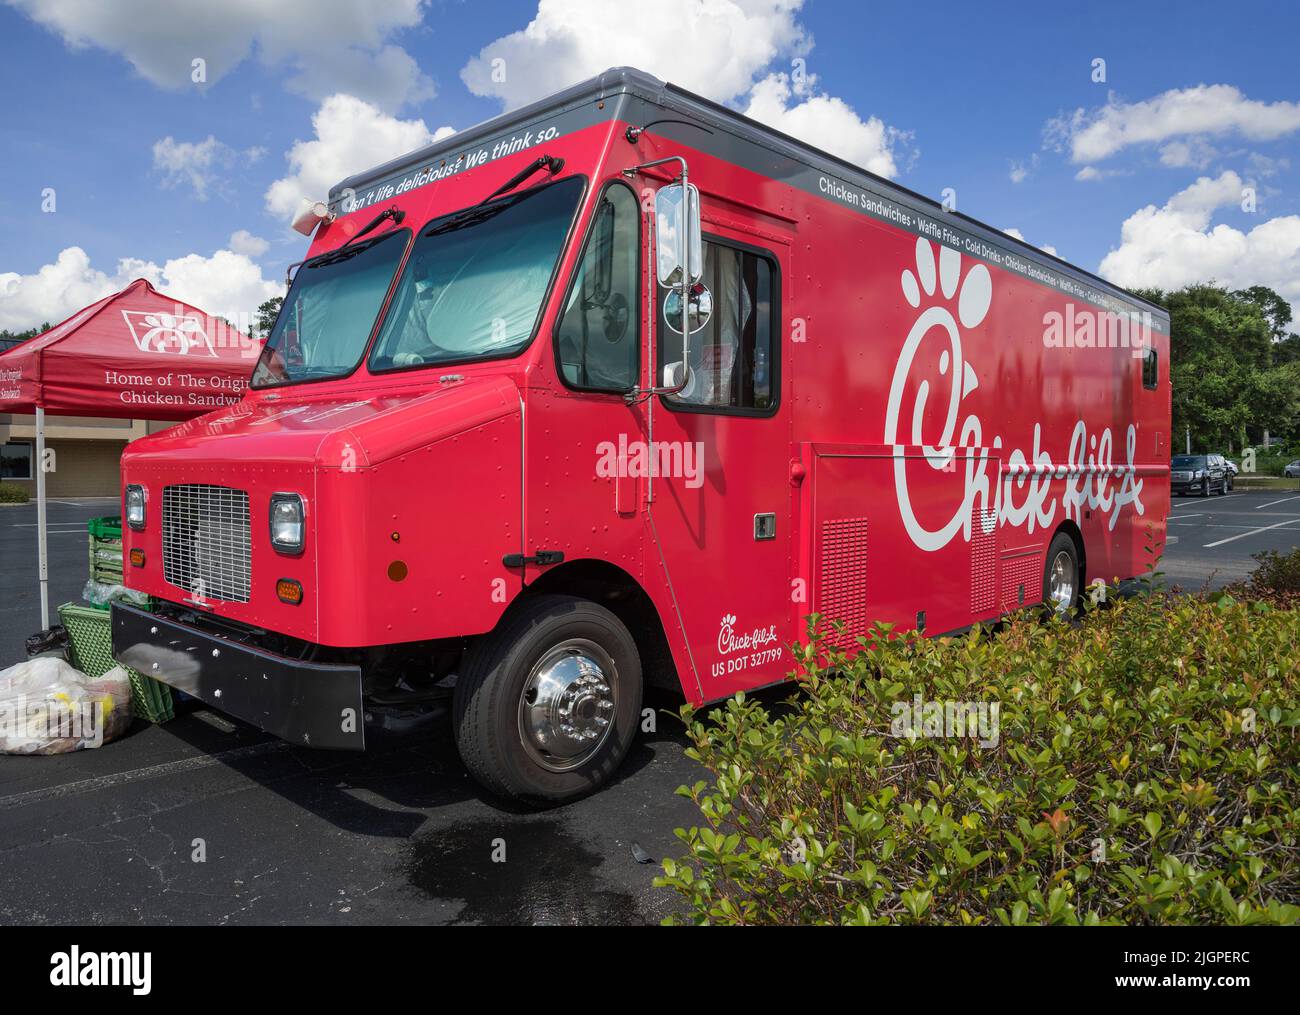 Un Chick-Fil-A mobile, camion serve le sue prelibatezze mentre parcheggiato in un parcheggio del centro commerciale nel nord della Florida centrale. Foto Stock